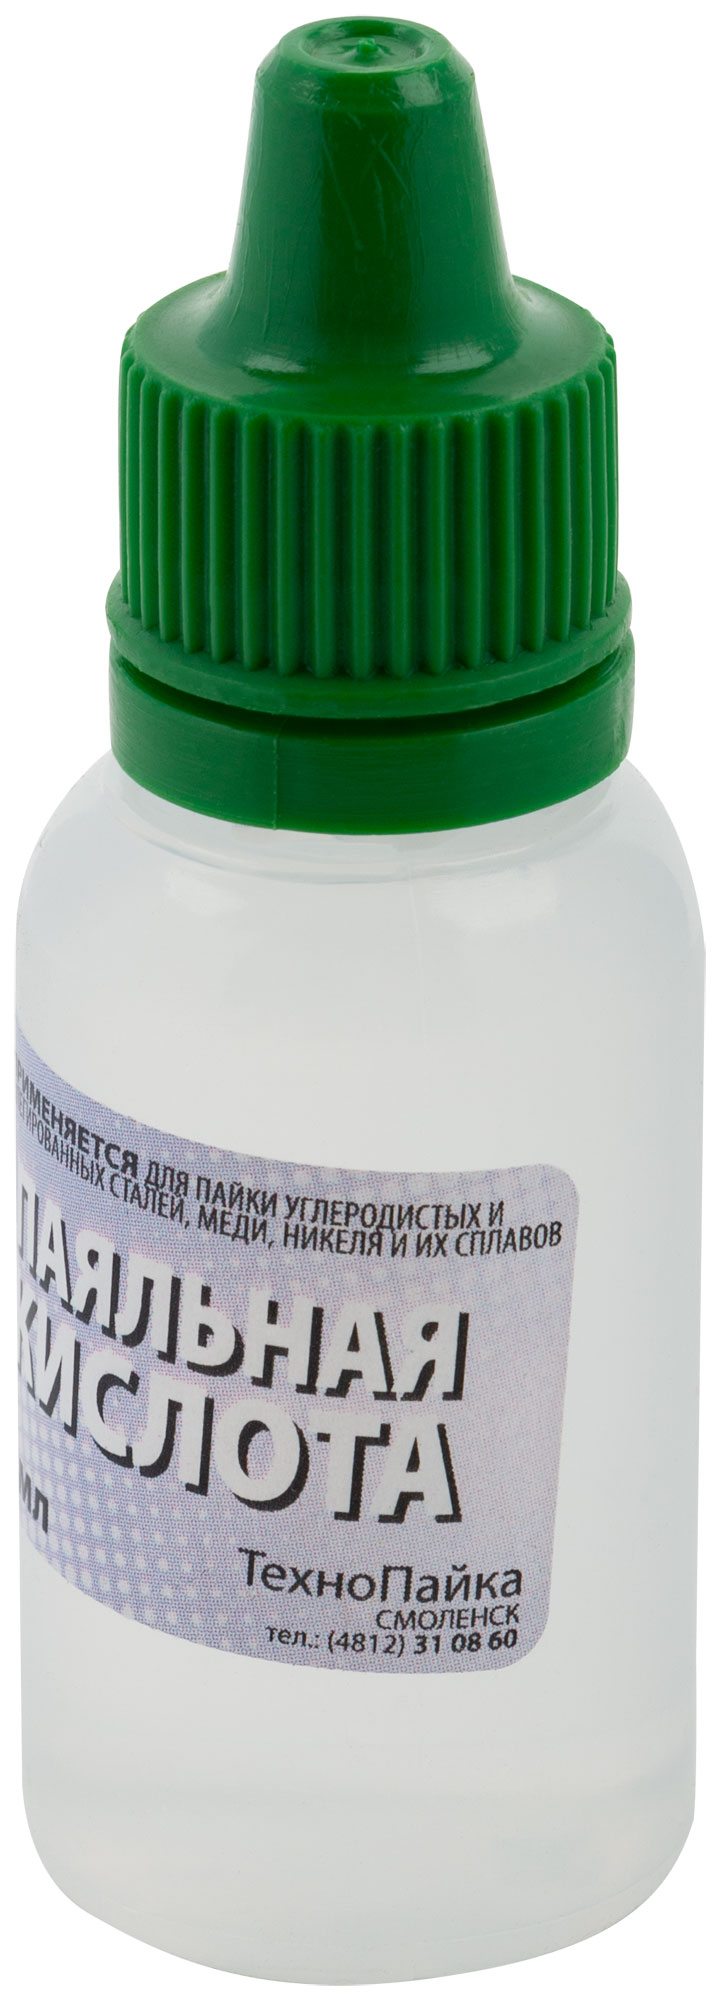 Паяльная кислота ( высокоактивный флюс на основе хлористых солей цинка ) 15 мл